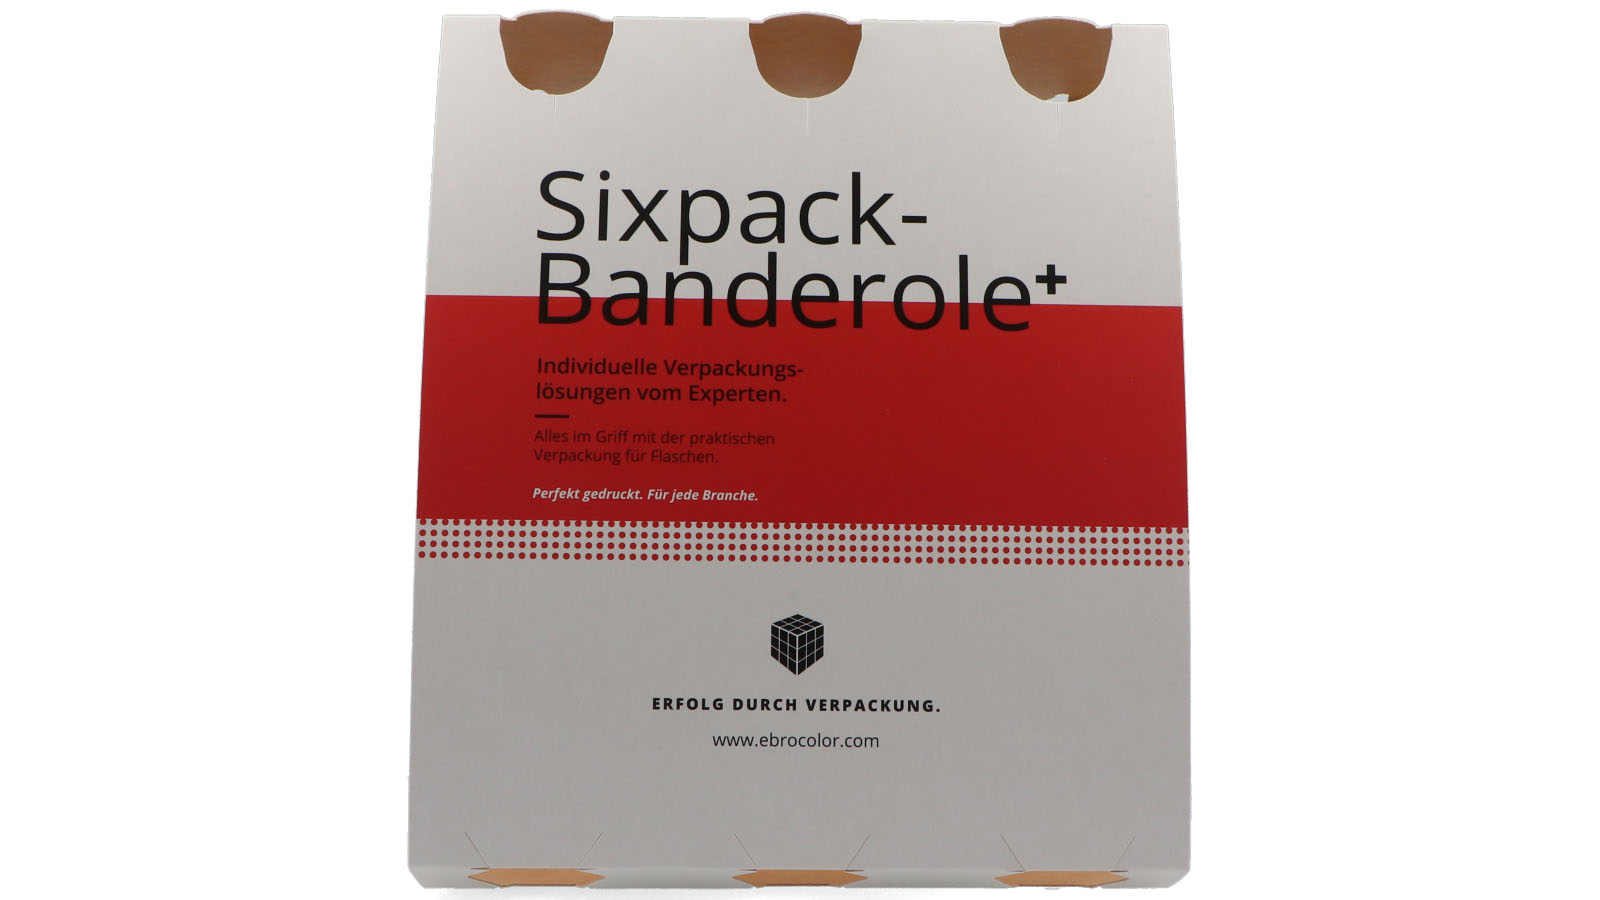 Sixpack-Banderole kann beliebig bedruckt werden